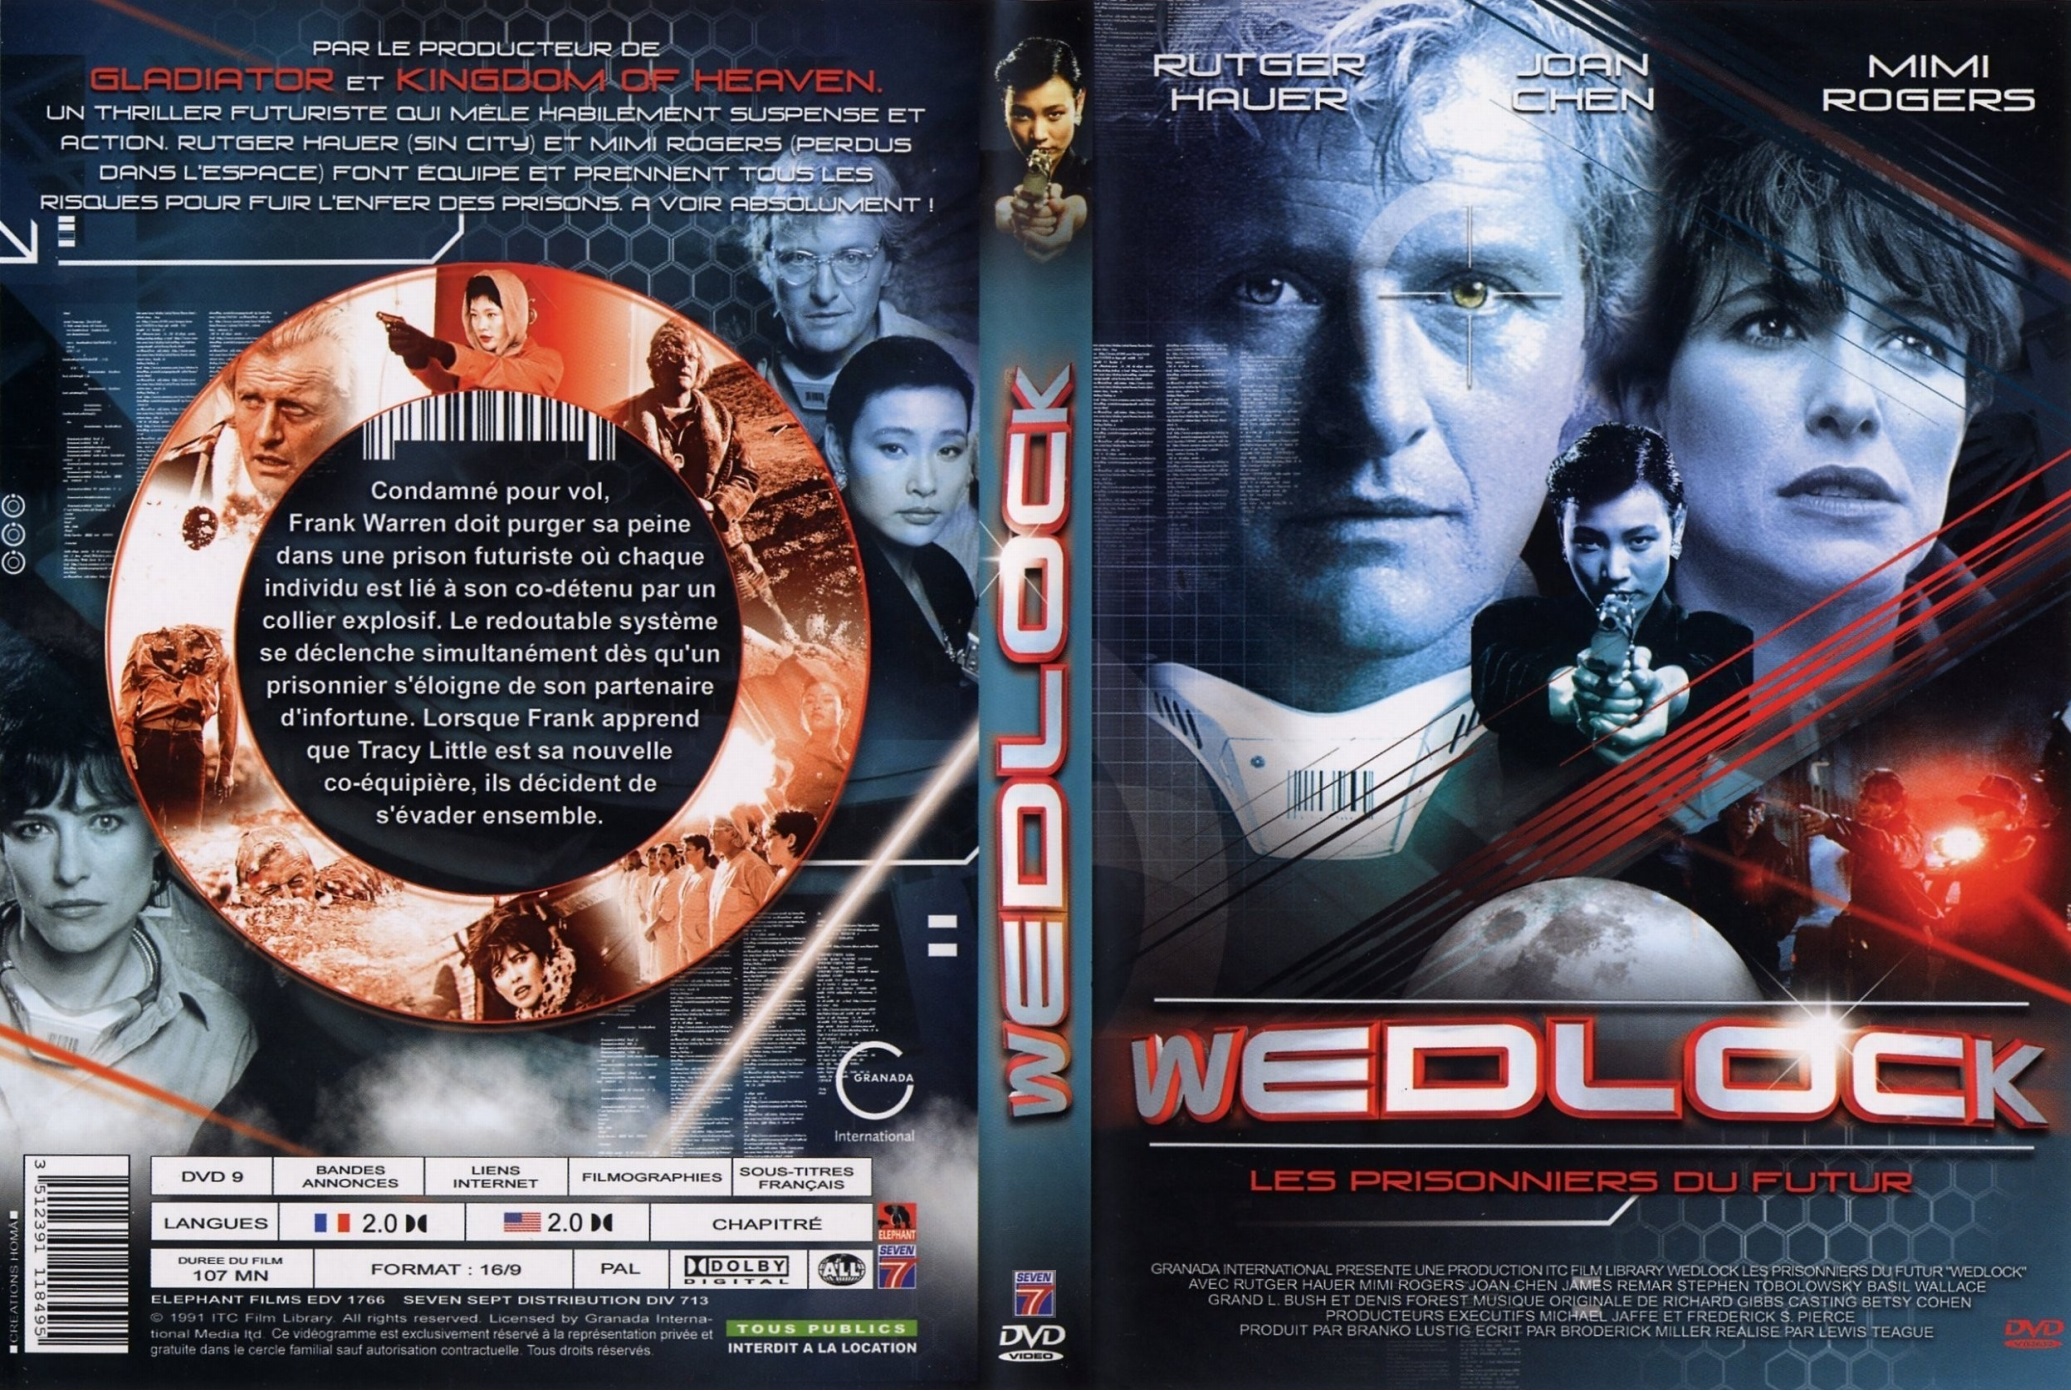 Jaquette DVD Wedlock les prisonniers du futur 